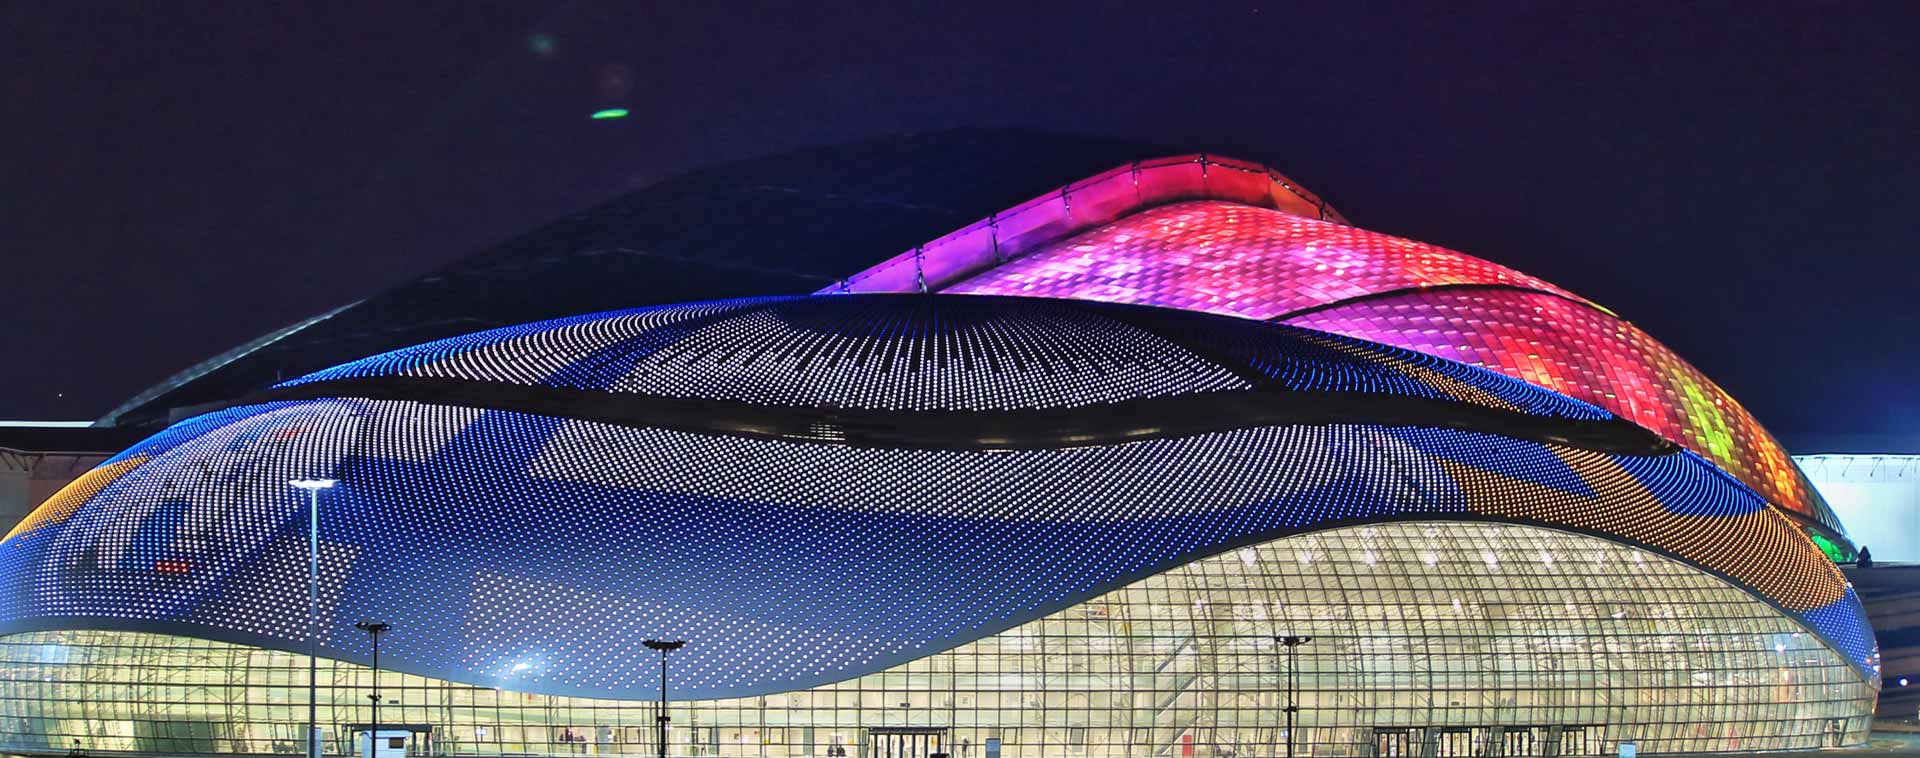 Bolshoy Ice Dome Olimpiadi Invernali Soci vista notturna